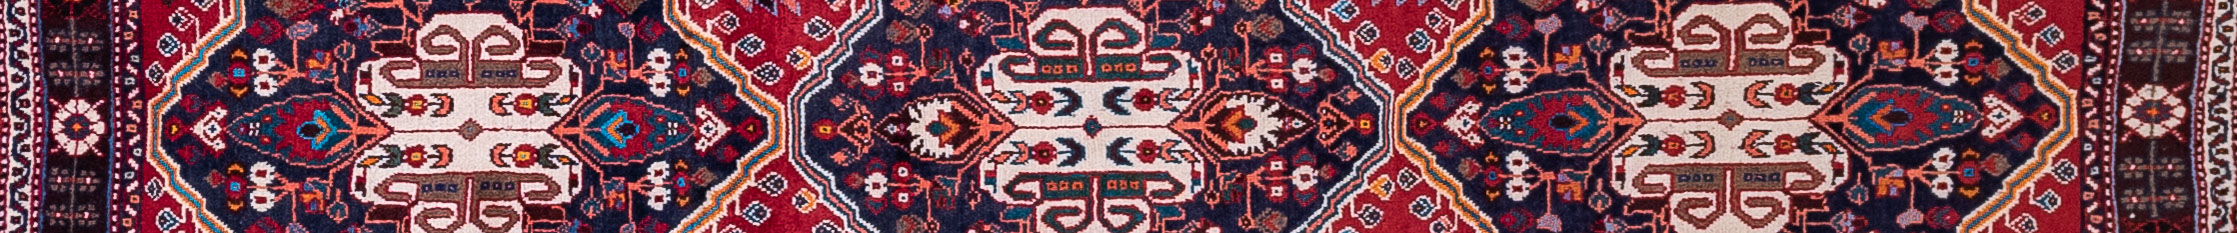 Shiraz Persian Carpet Rug N1Carpet Canada Montreal Tapis Persan 890